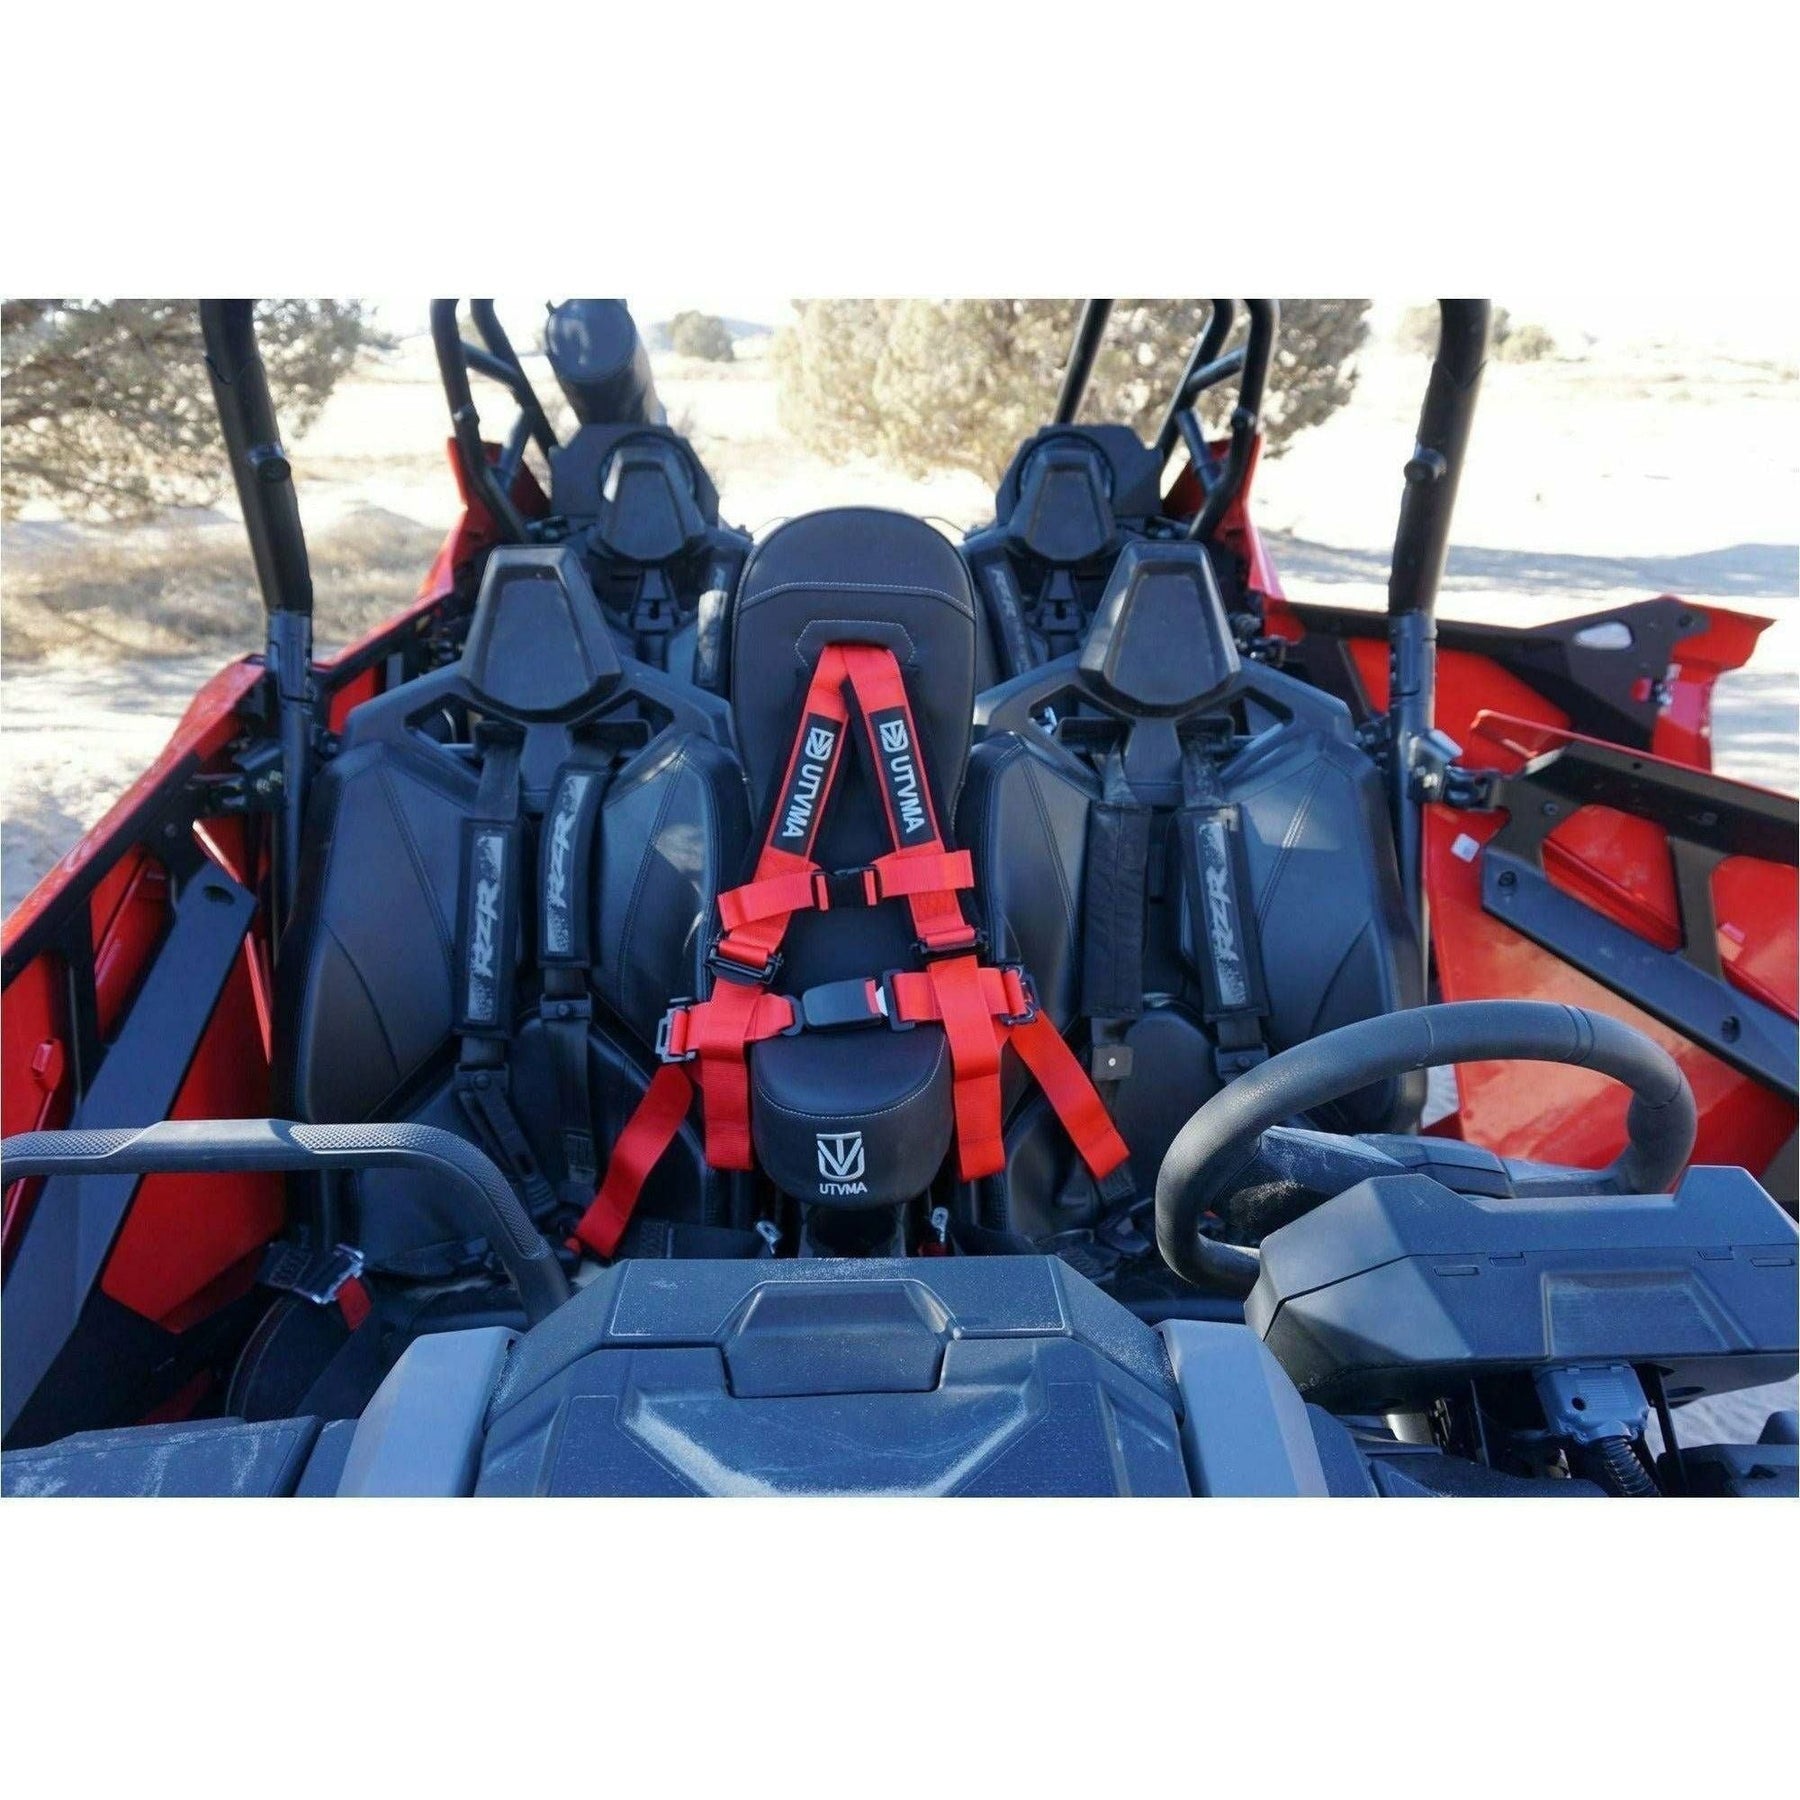 UTV Mountain Accessories Polaris RZR PRO XP (4-Seat) Front Bump Seat